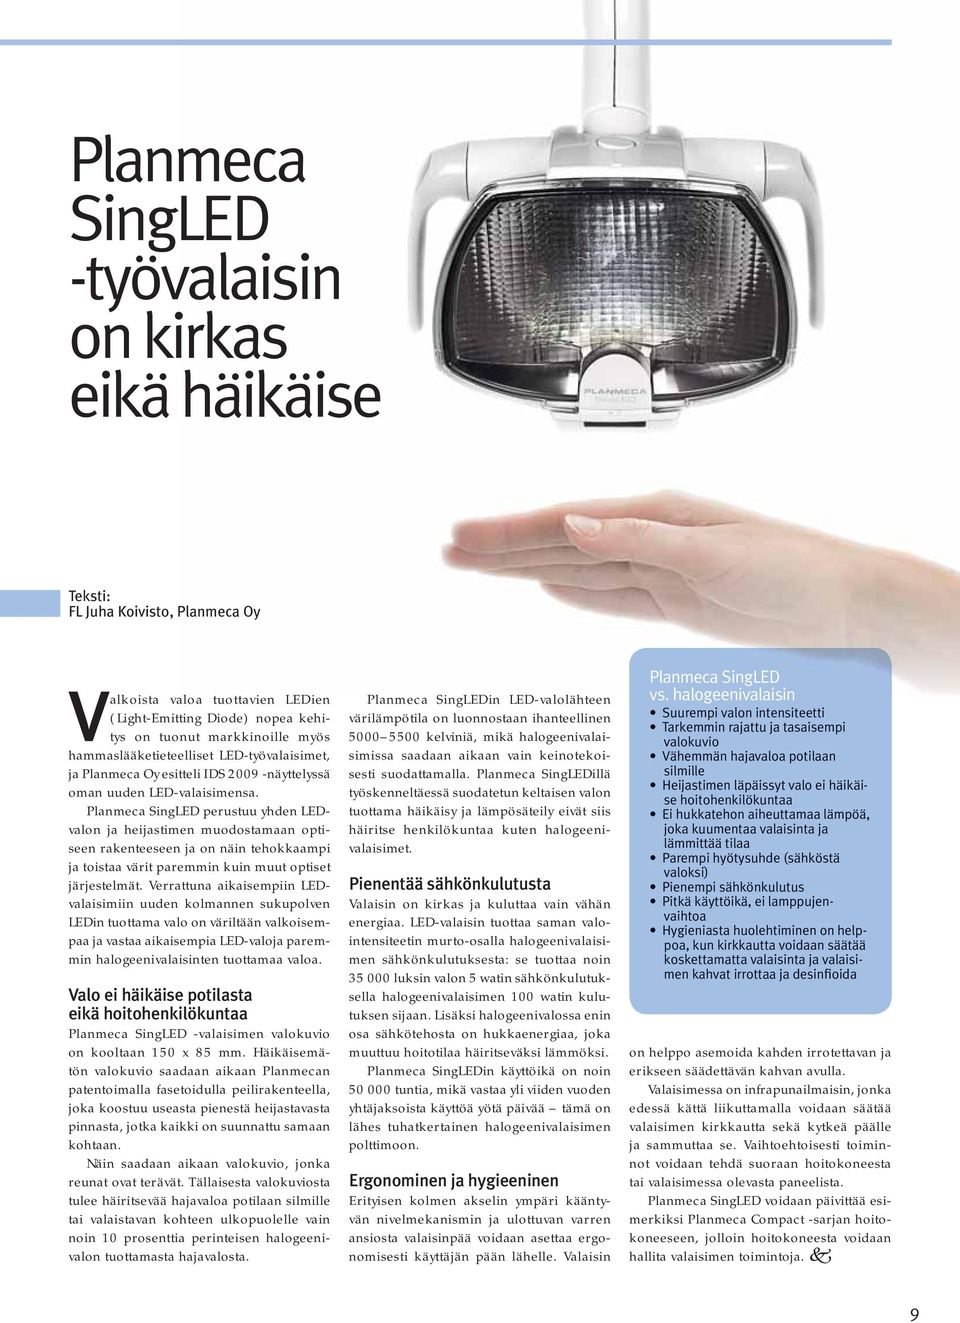 Planmeca SingLED perustuu yhden LEDvalon ja heijastimen muodostamaan optiseen rakenteeseen ja on näin tehokkaampi ja toistaa värit paremmin kuin muut optiset järjestelmät.